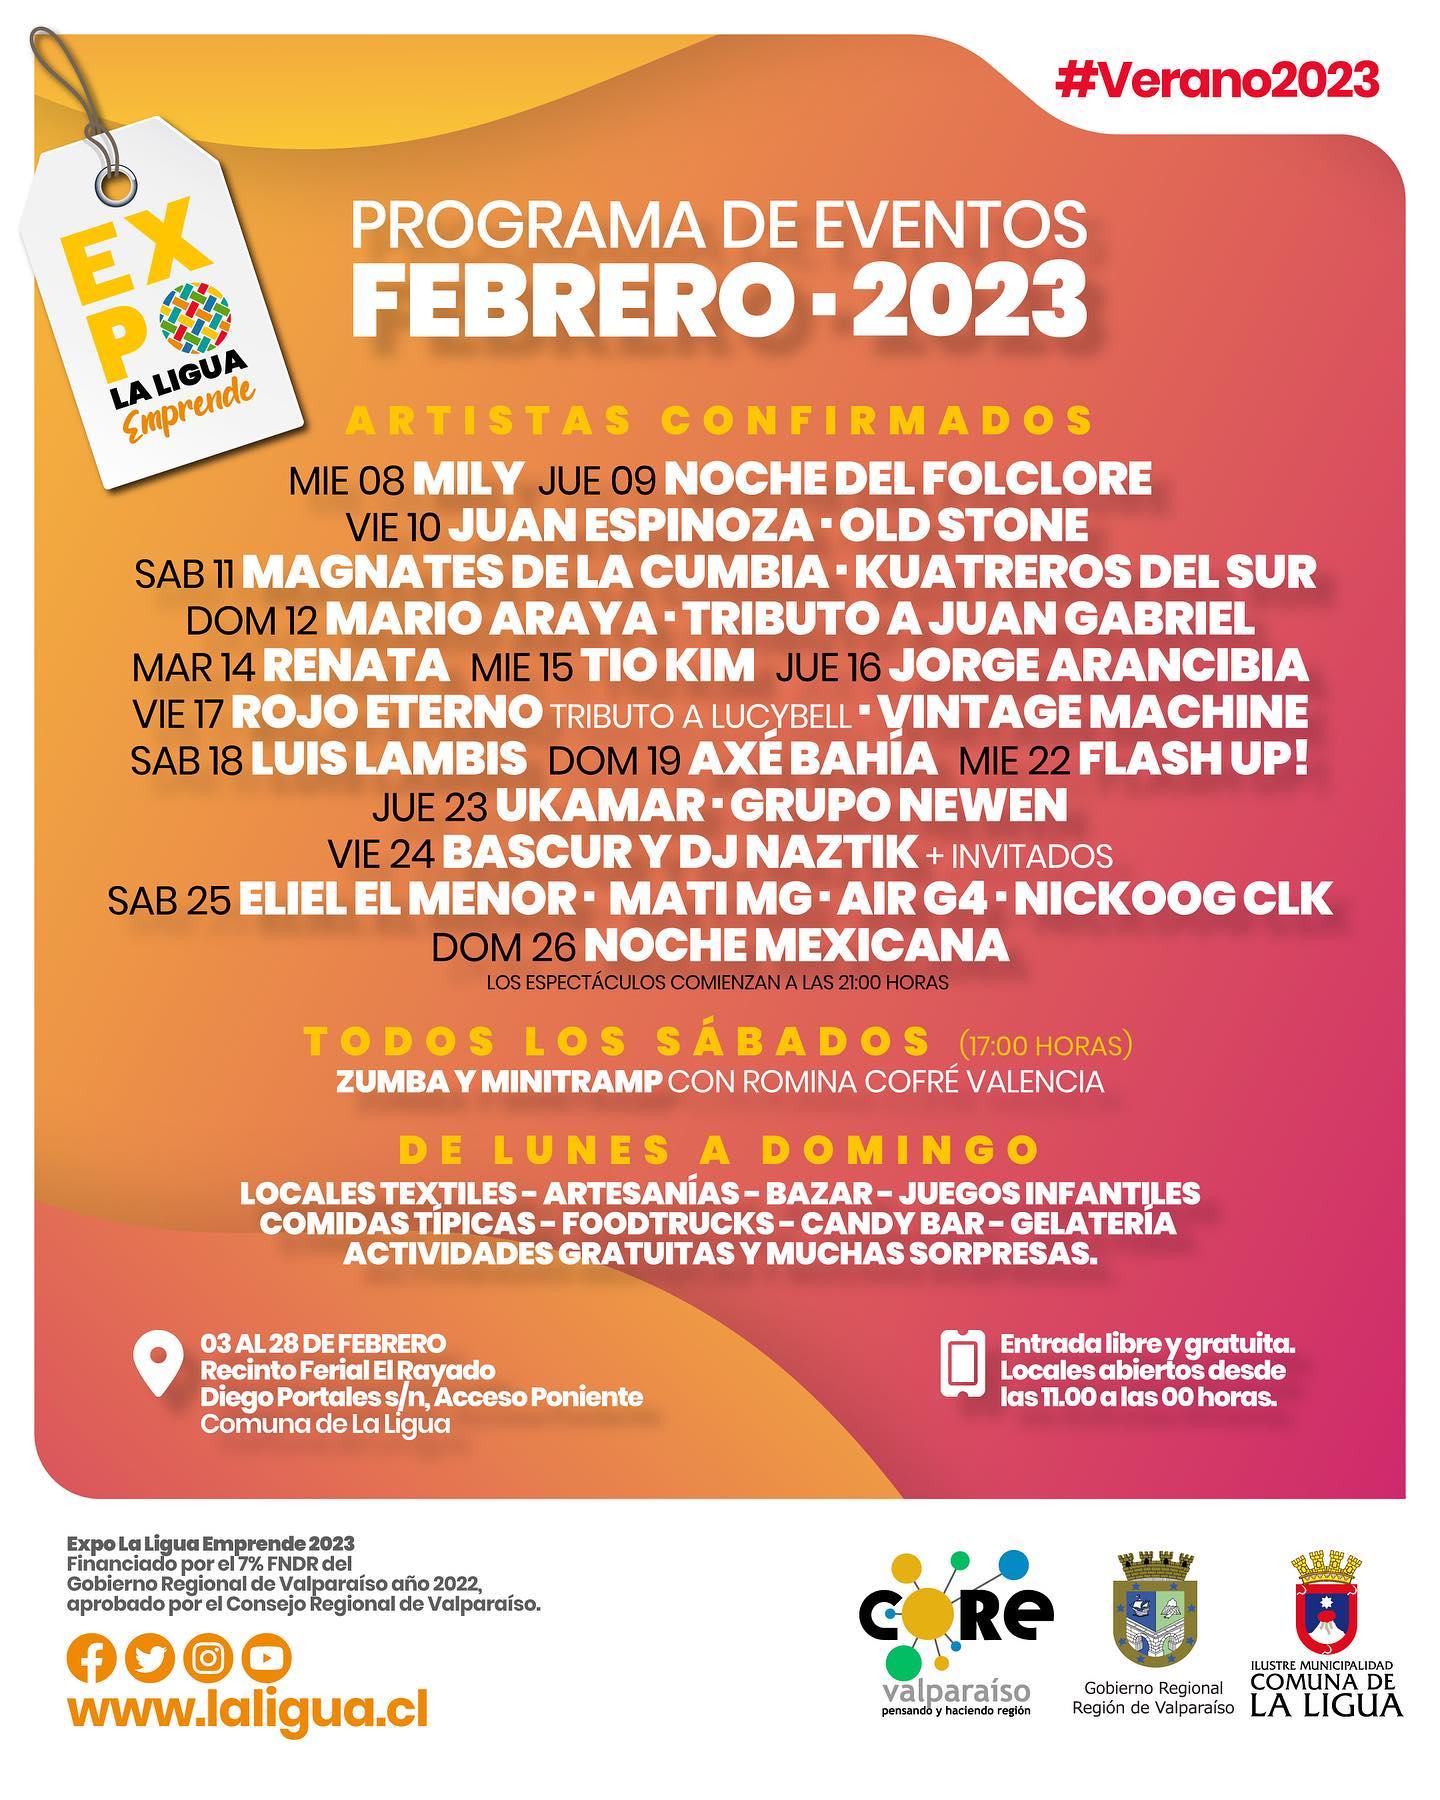 Expo La Ligua 2023 fechas y artistas por día